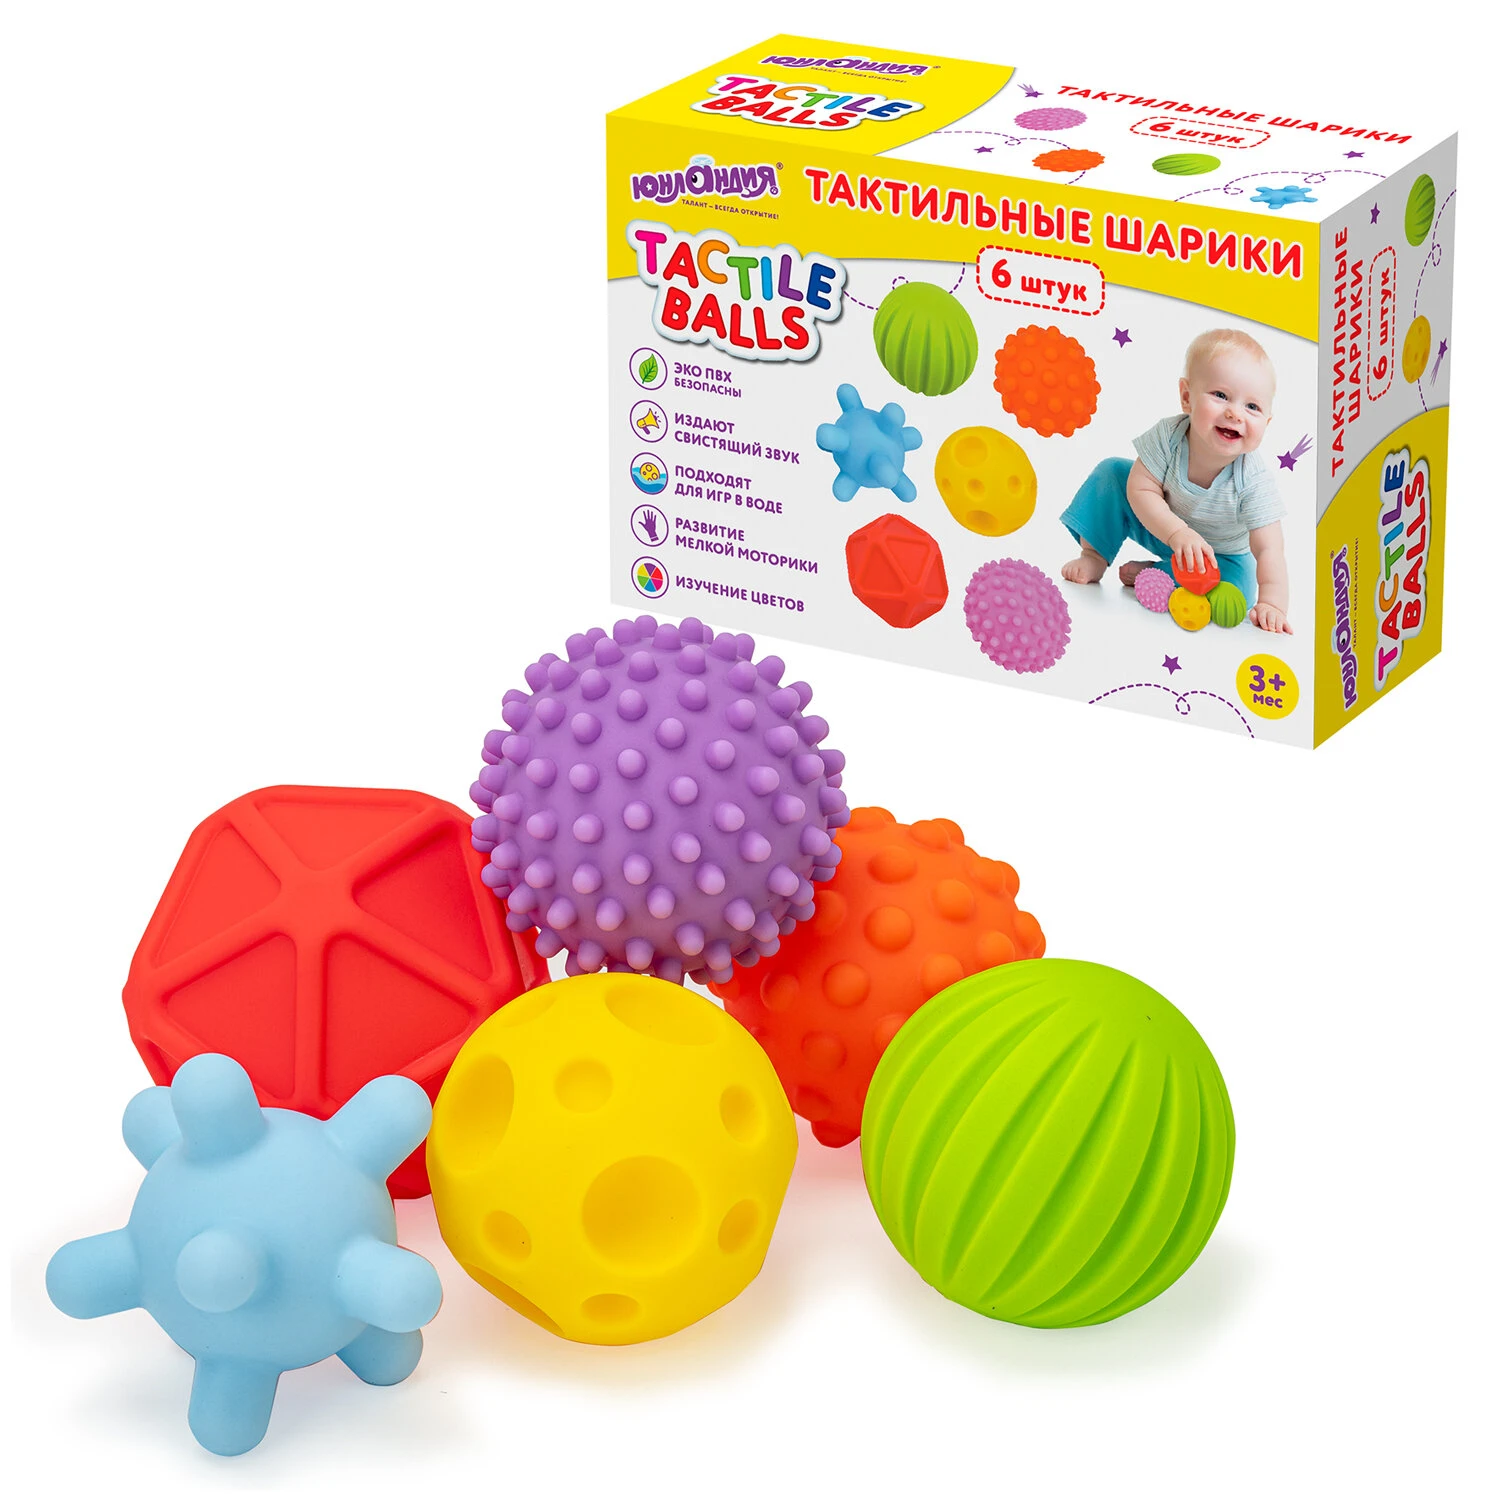 Тактильные мячики, сенсорные игрушки развивающие, ЭКО, 6 штук, d 60-80 мм,